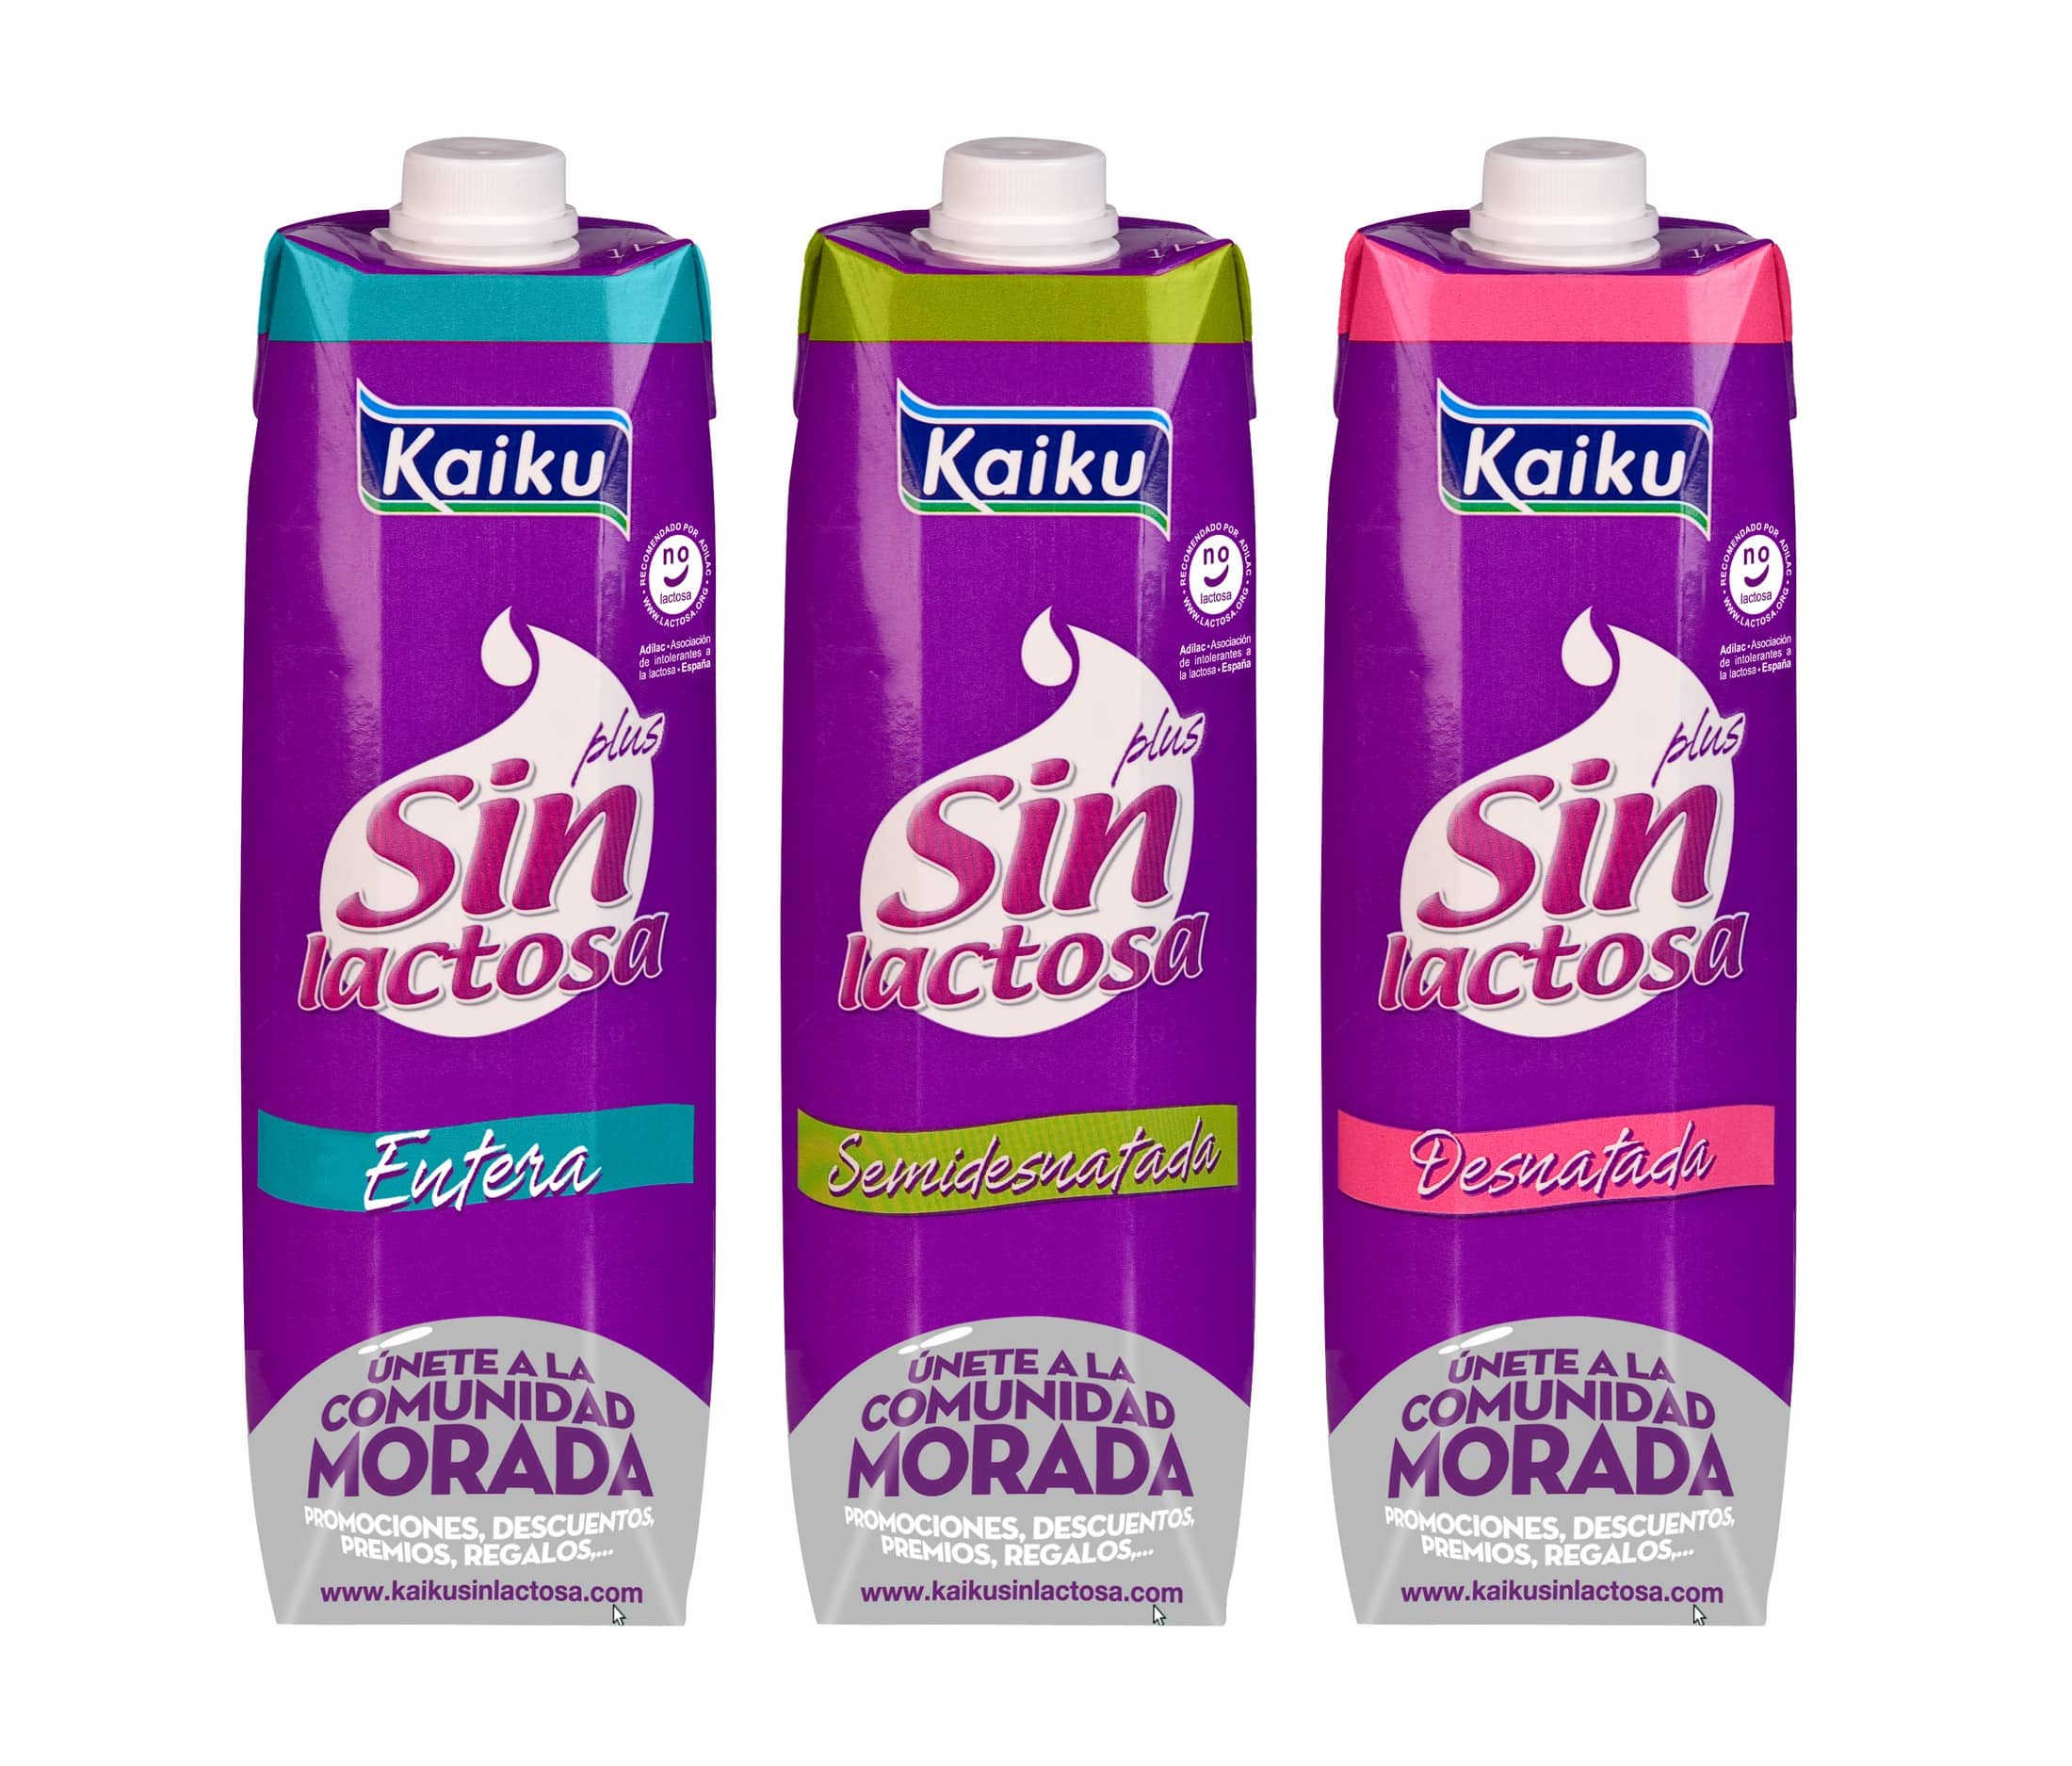 Kaiku, la gama de lácteos sin lactosa, propone un picoteo saludable con nuevas recetas